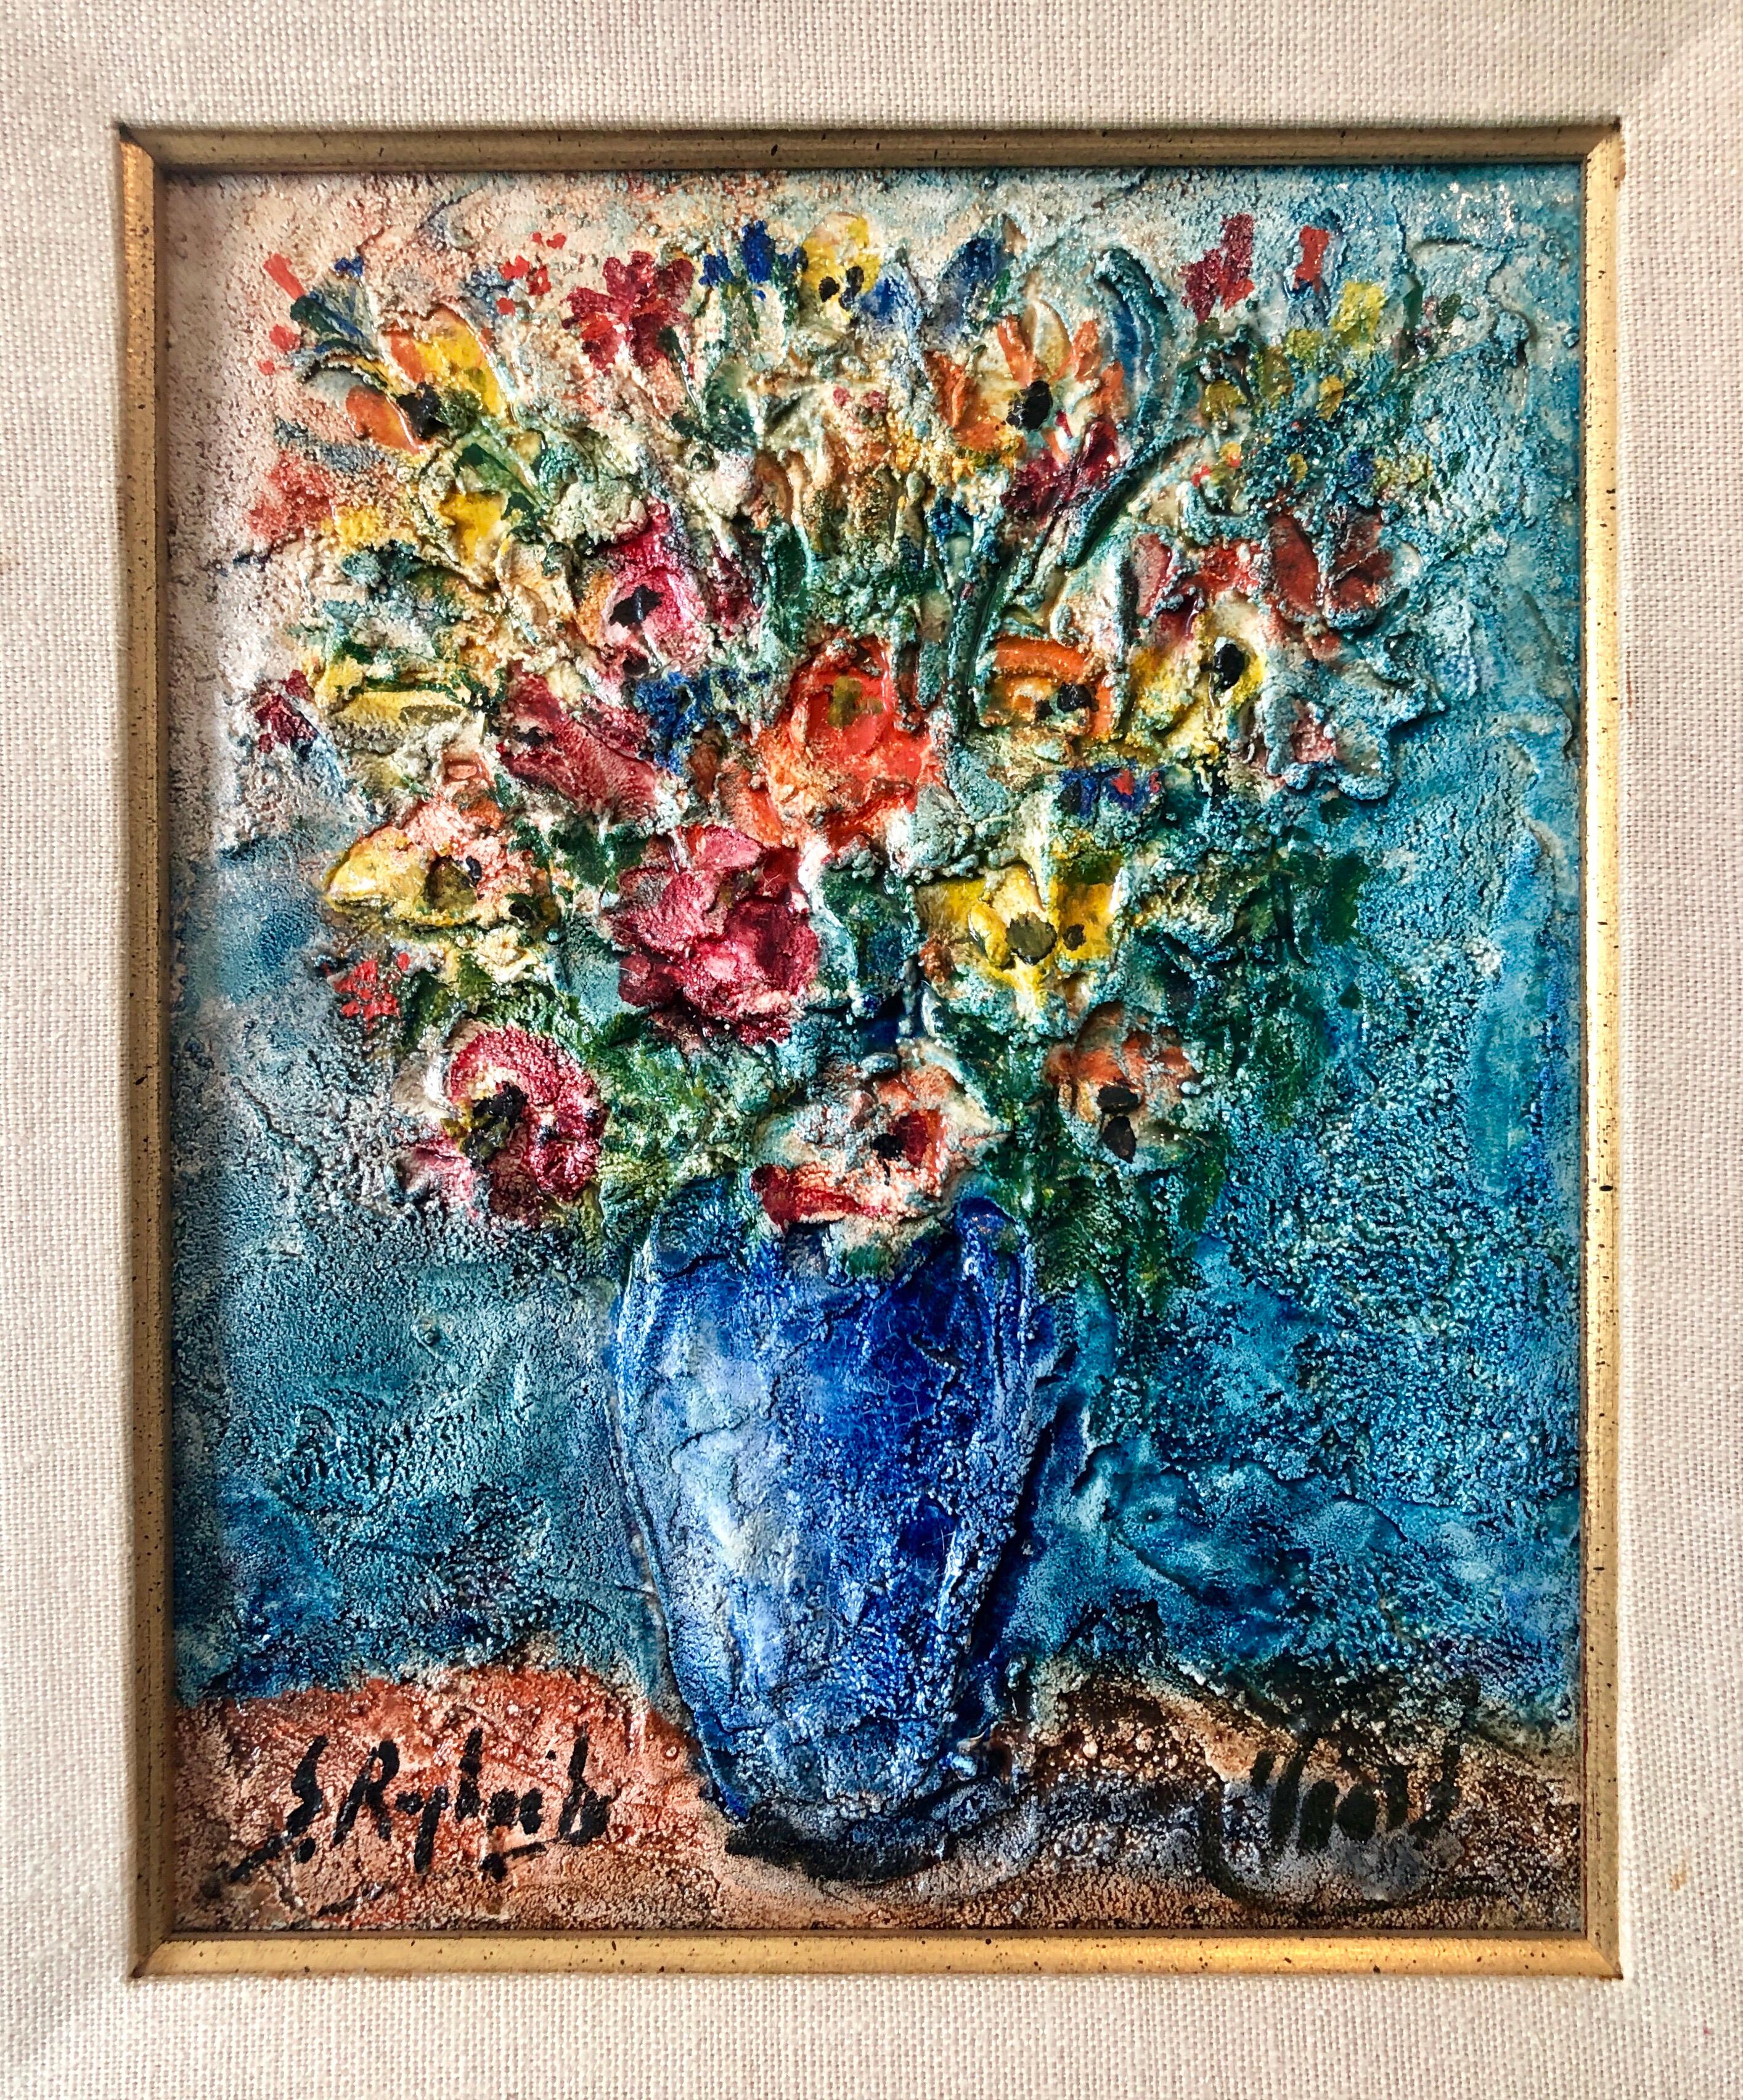 Vase of Flowers Judaica Oil Painting Israeli Jewish Rabbi Artist After Chagall 1